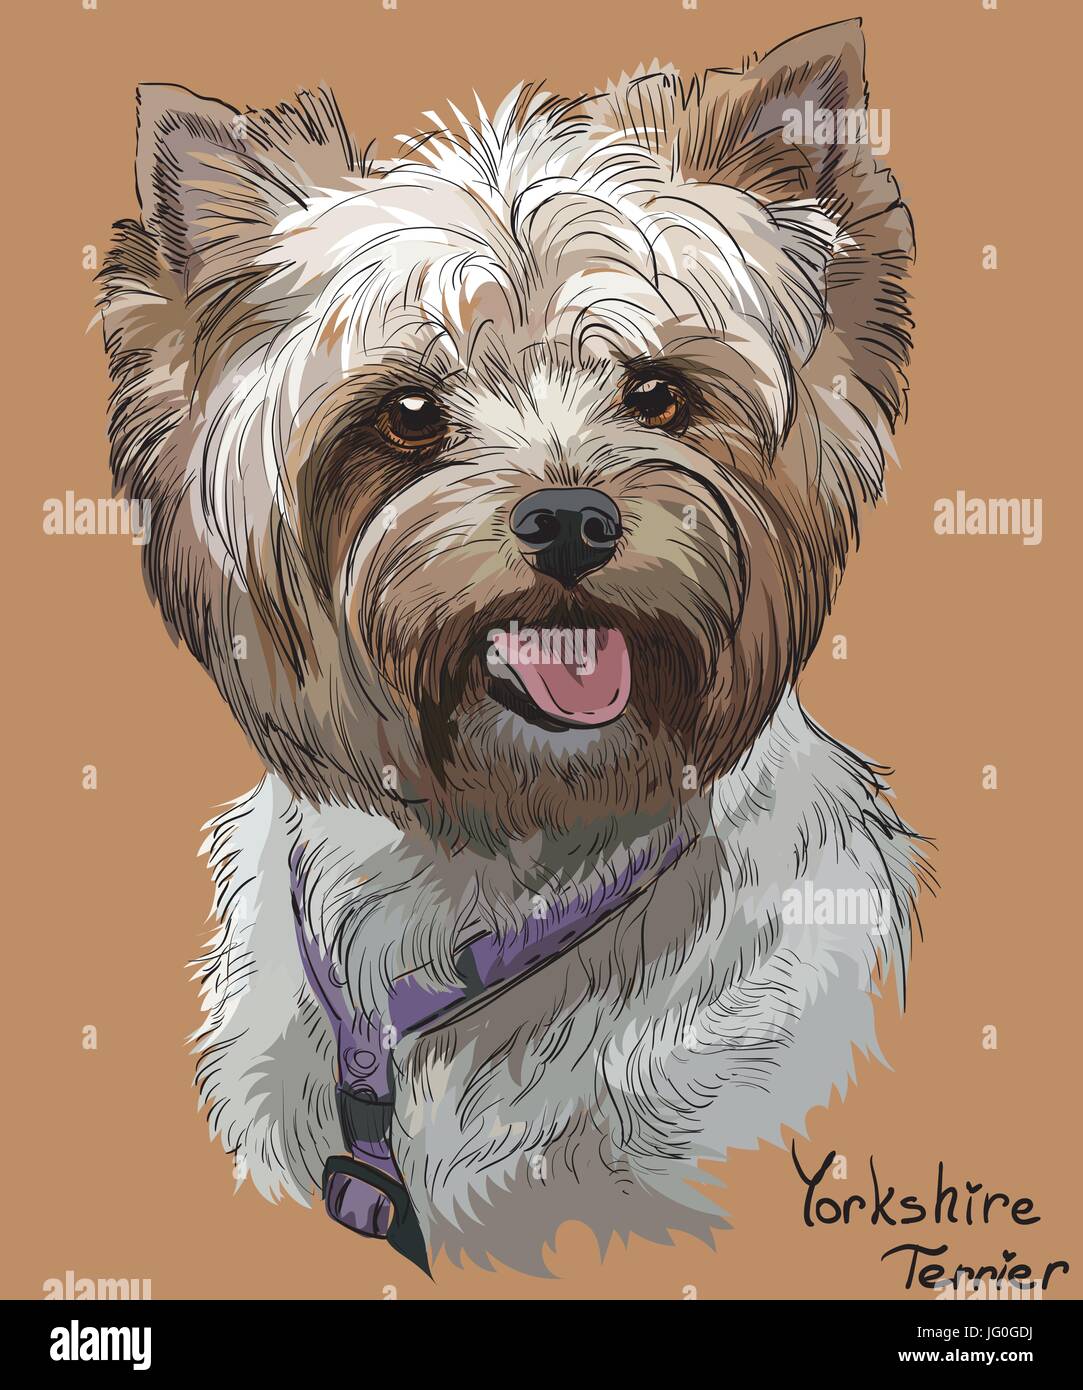 Vektor Porträt der Yorkshire-Terrier in verschiedenen Farbe Handzeichnung Illustration auf orangem Hintergrund Stock Vektor